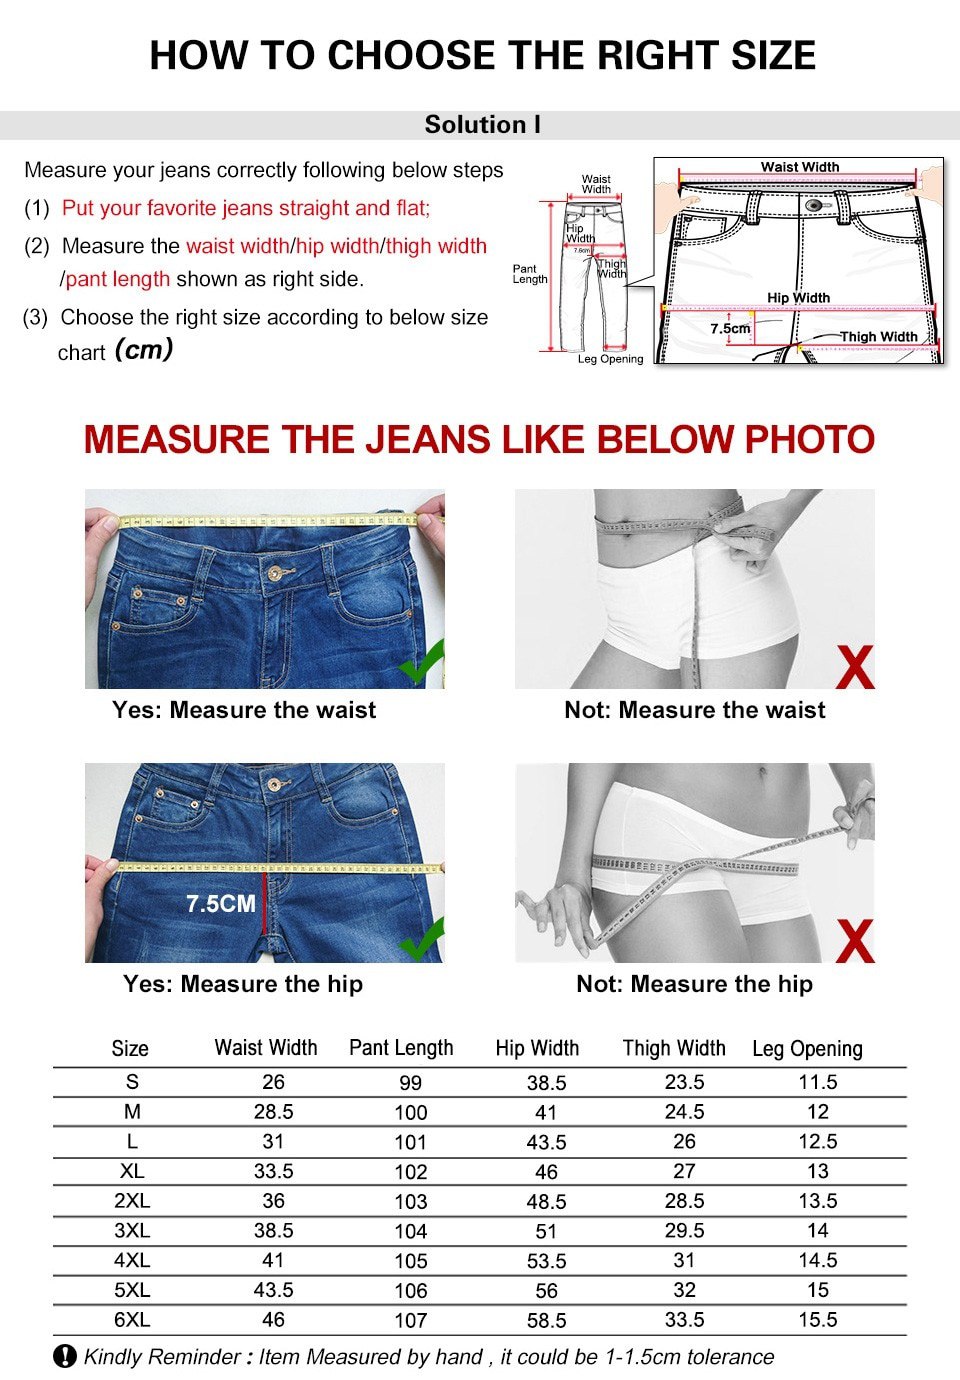 Продавец рекомендует измерять не талию, а старые джинсы: так и новые будут впору